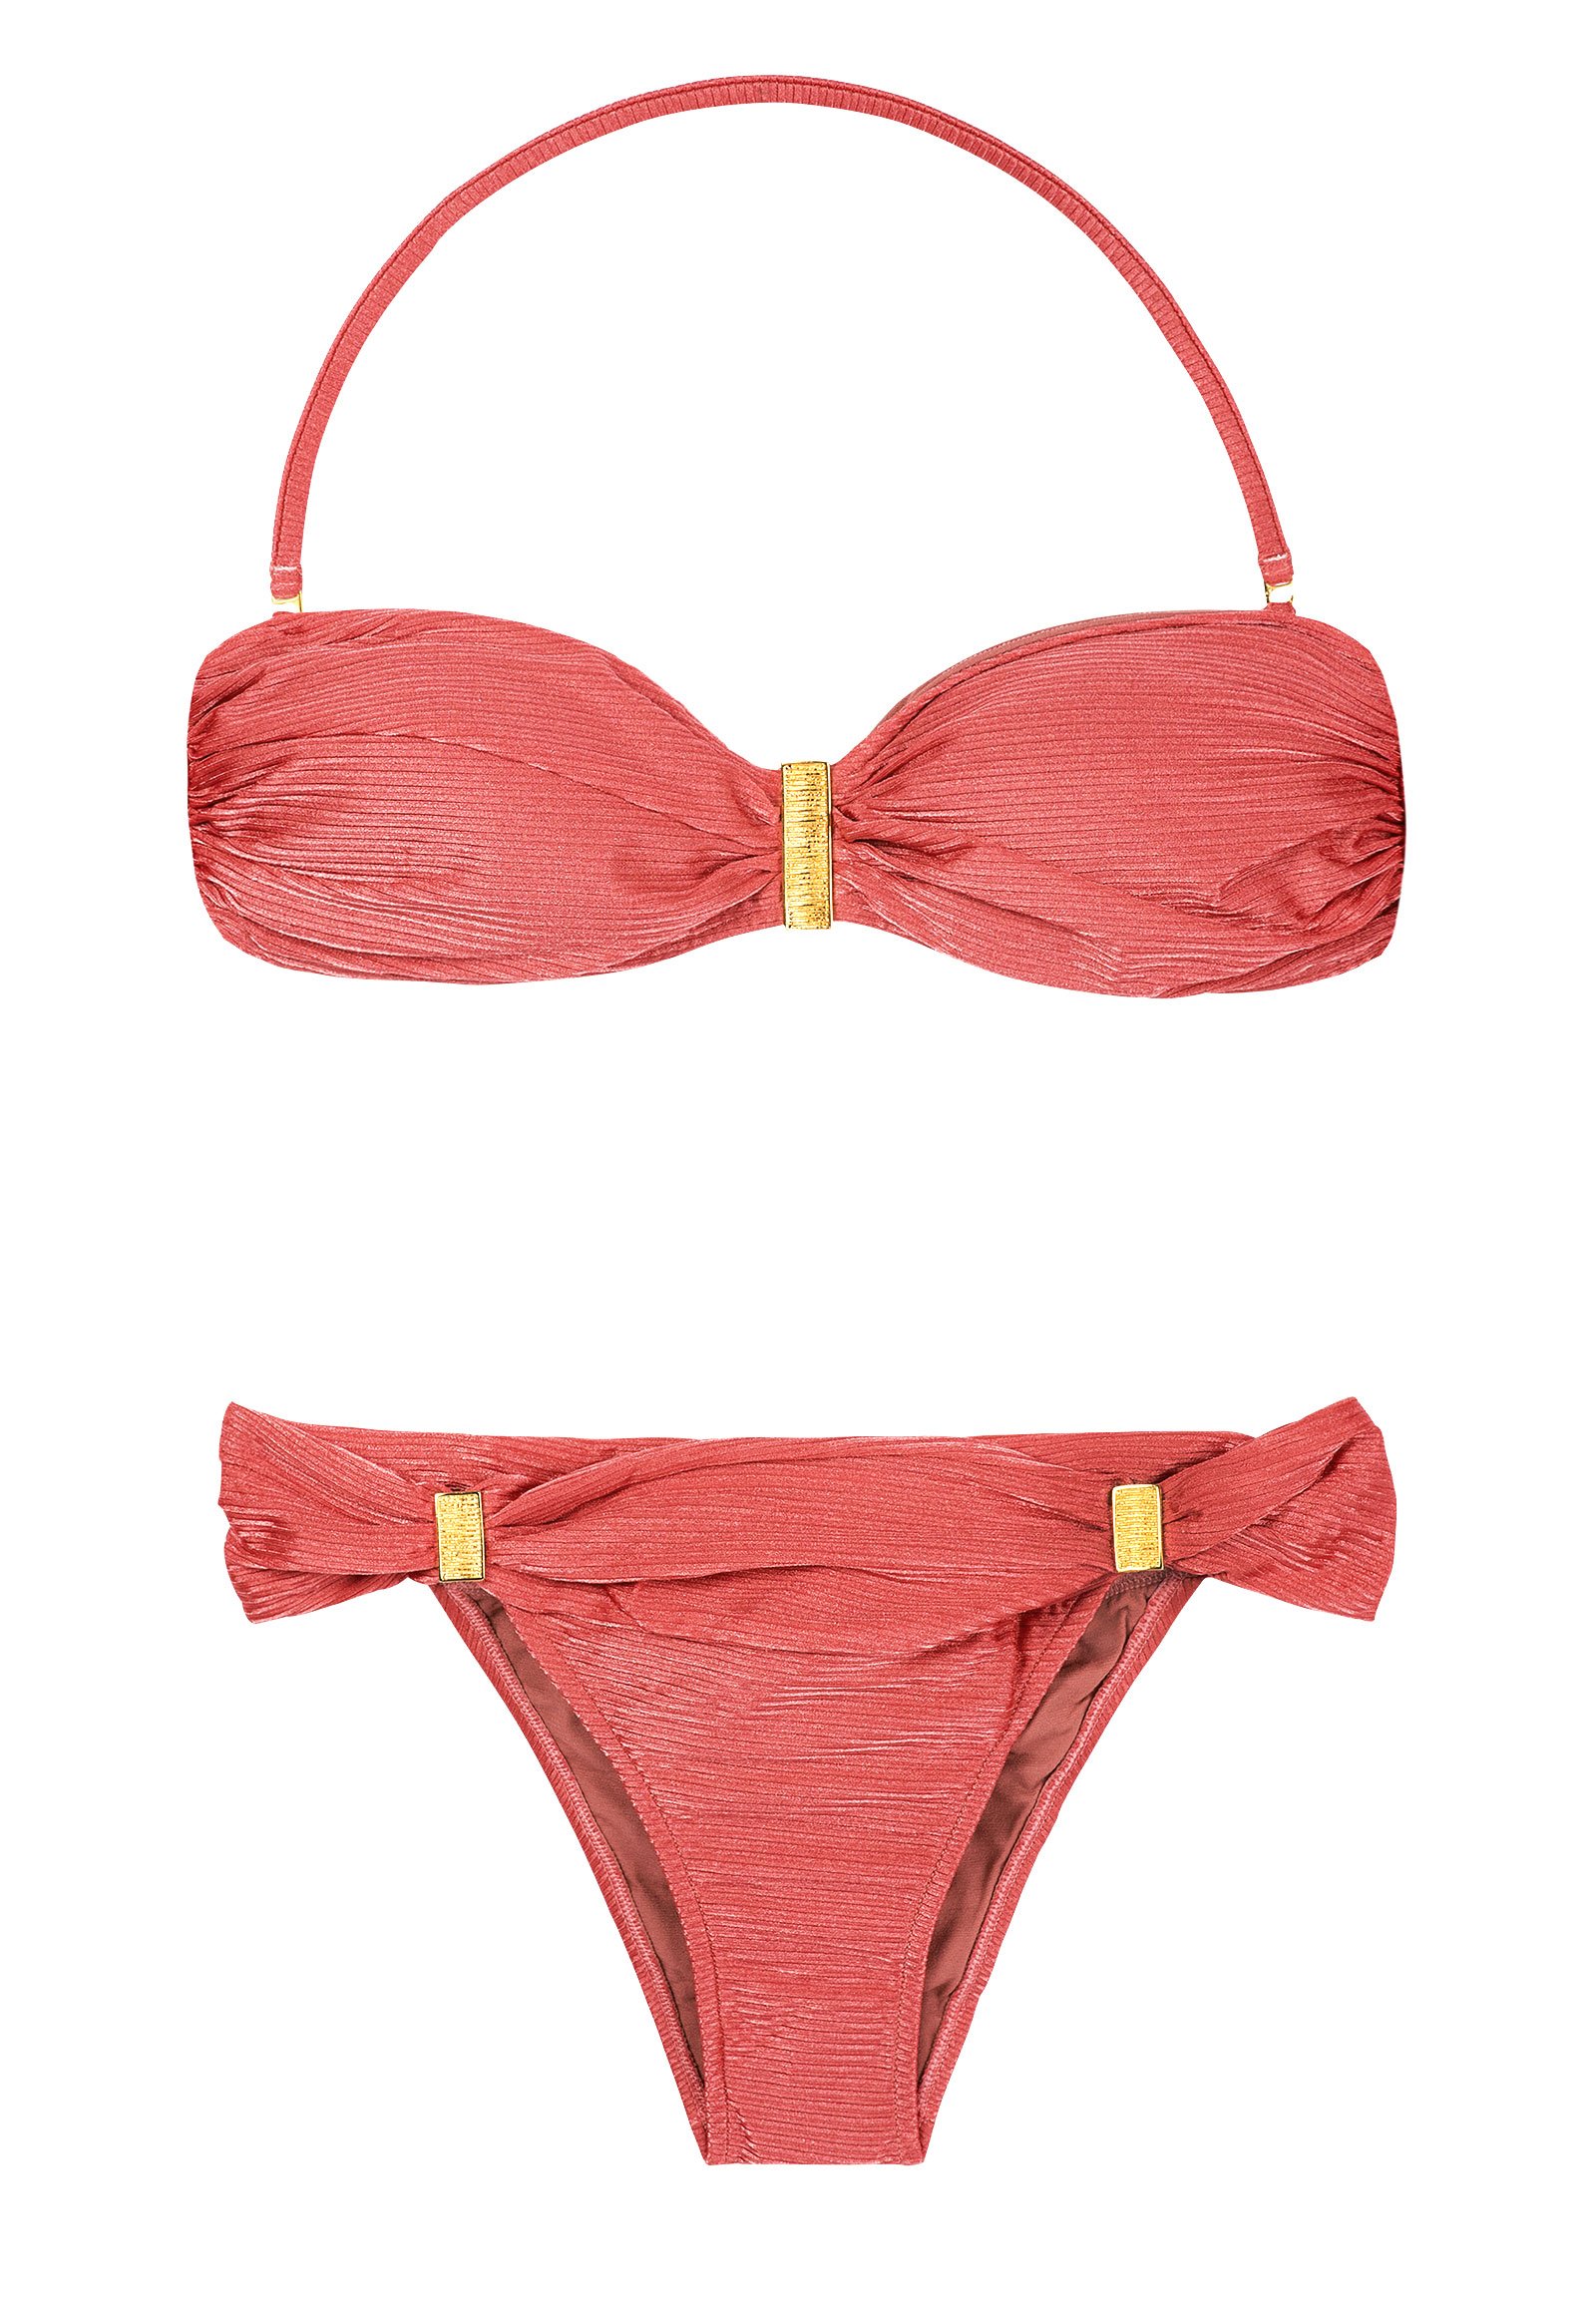 Pink Bandeau Top Bikini Set With Pleated Waistband Bottom - Canelado Rosa